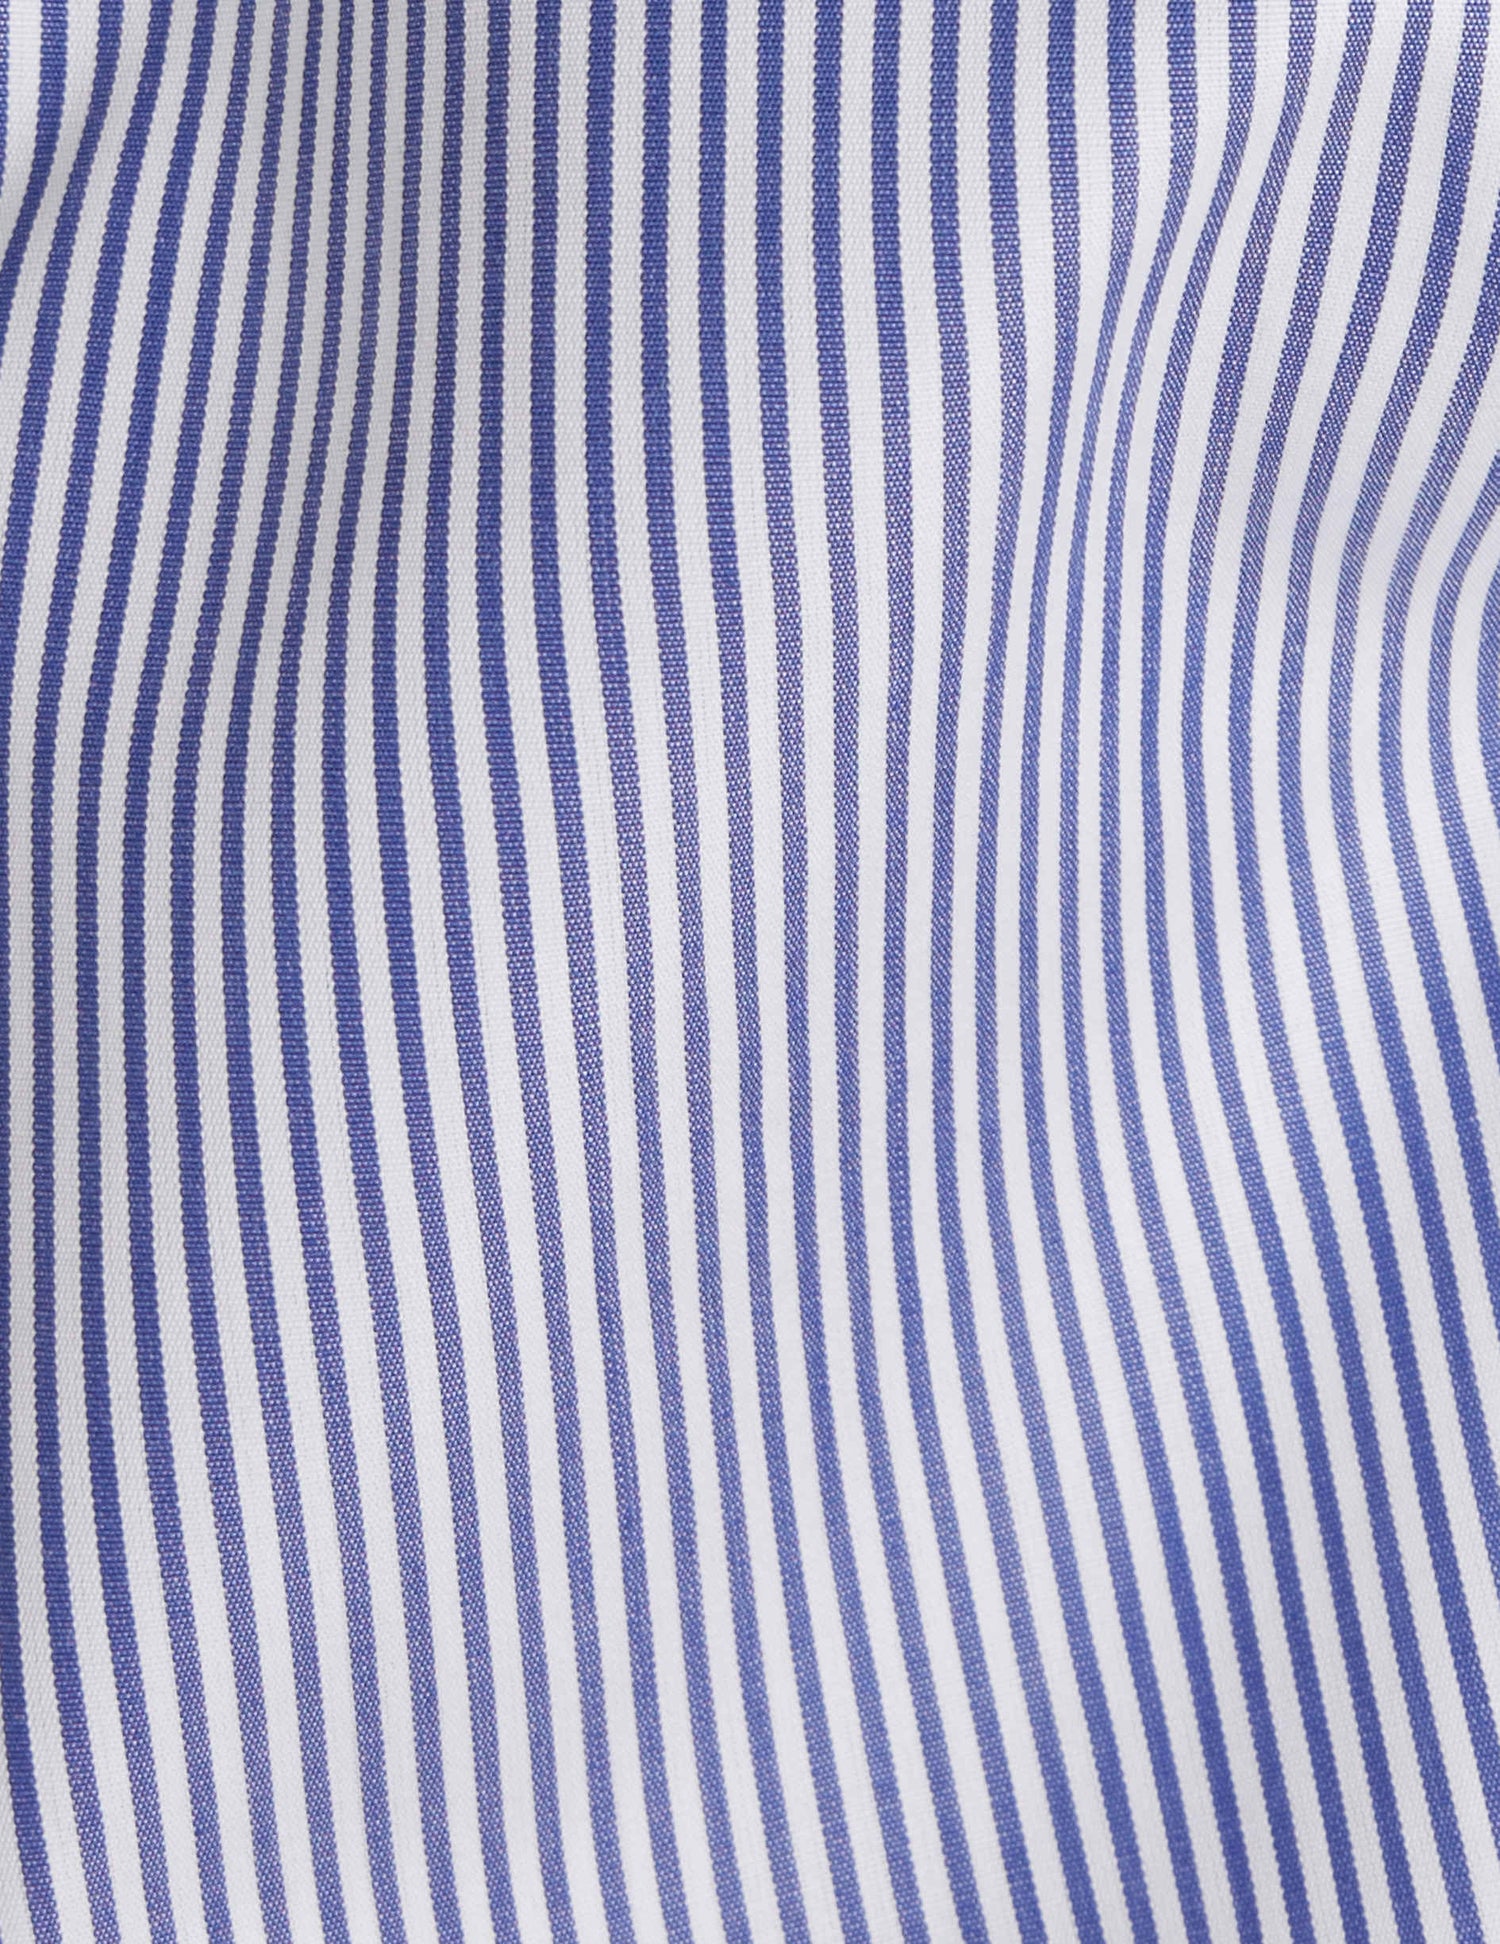 Chemise Louison gorge cachée rayée bleue - Popeline - Col Victorien#3